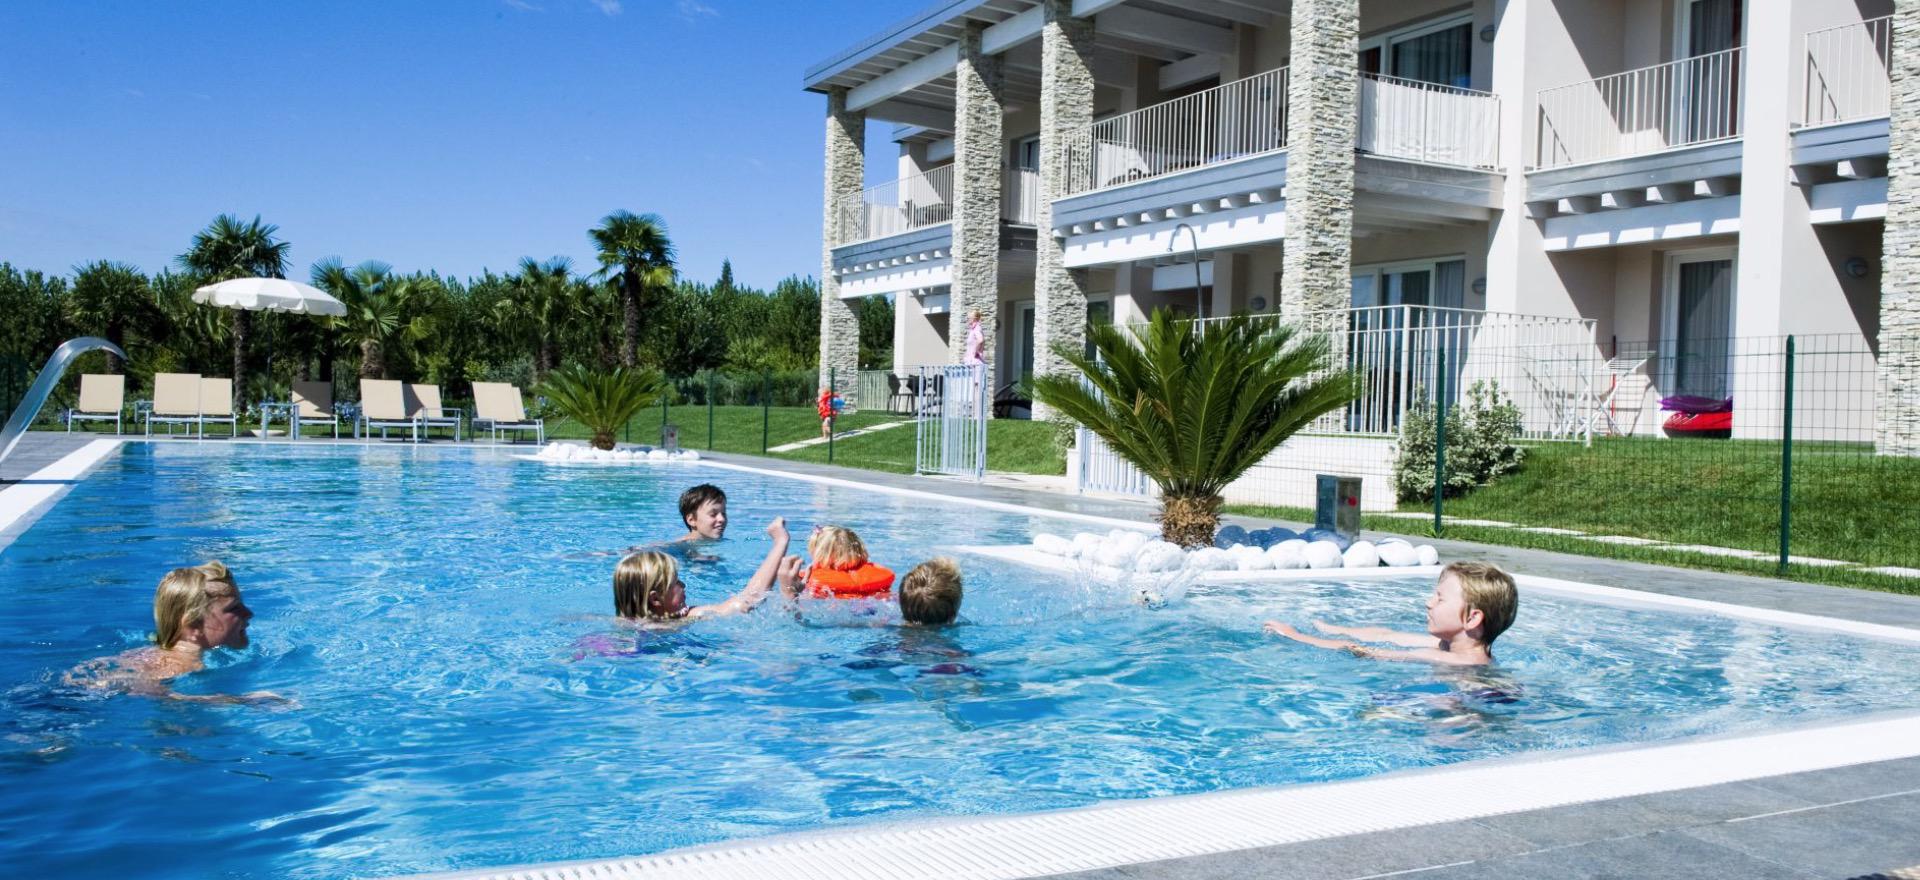 Agriturismo Lake Como and Lake Garda Child-friendly residence within walking distance of Lake Garda